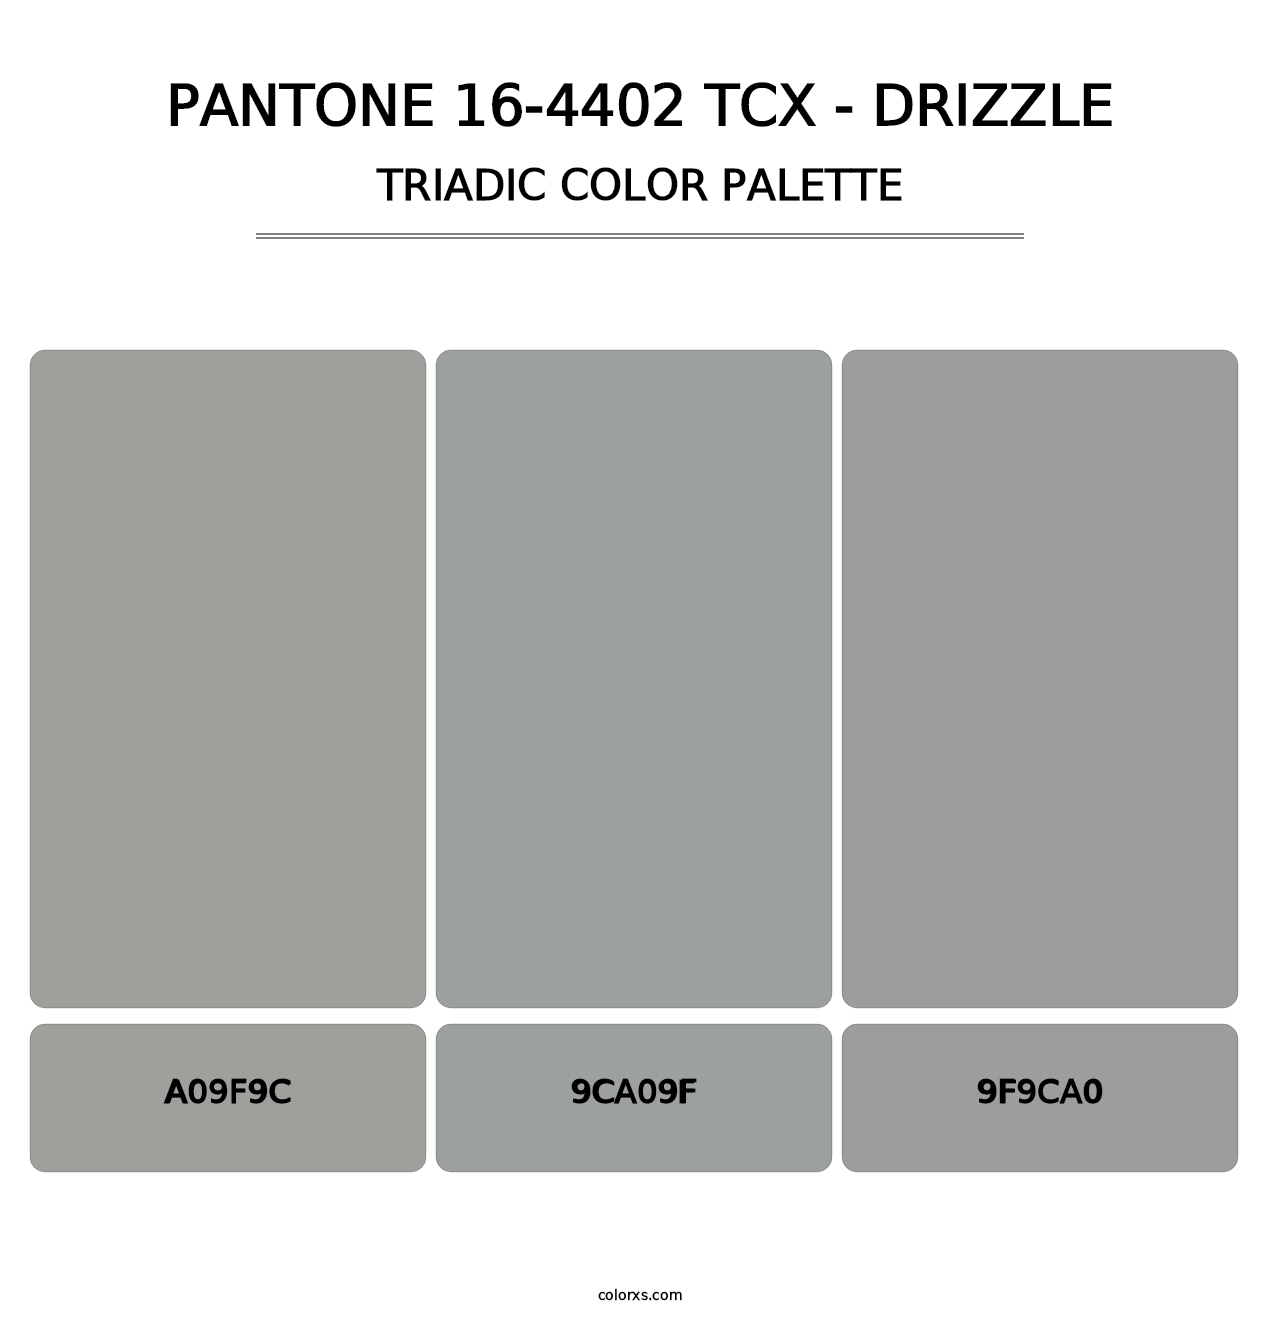 PANTONE 16-4402 TCX - Drizzle - Triadic Color Palette